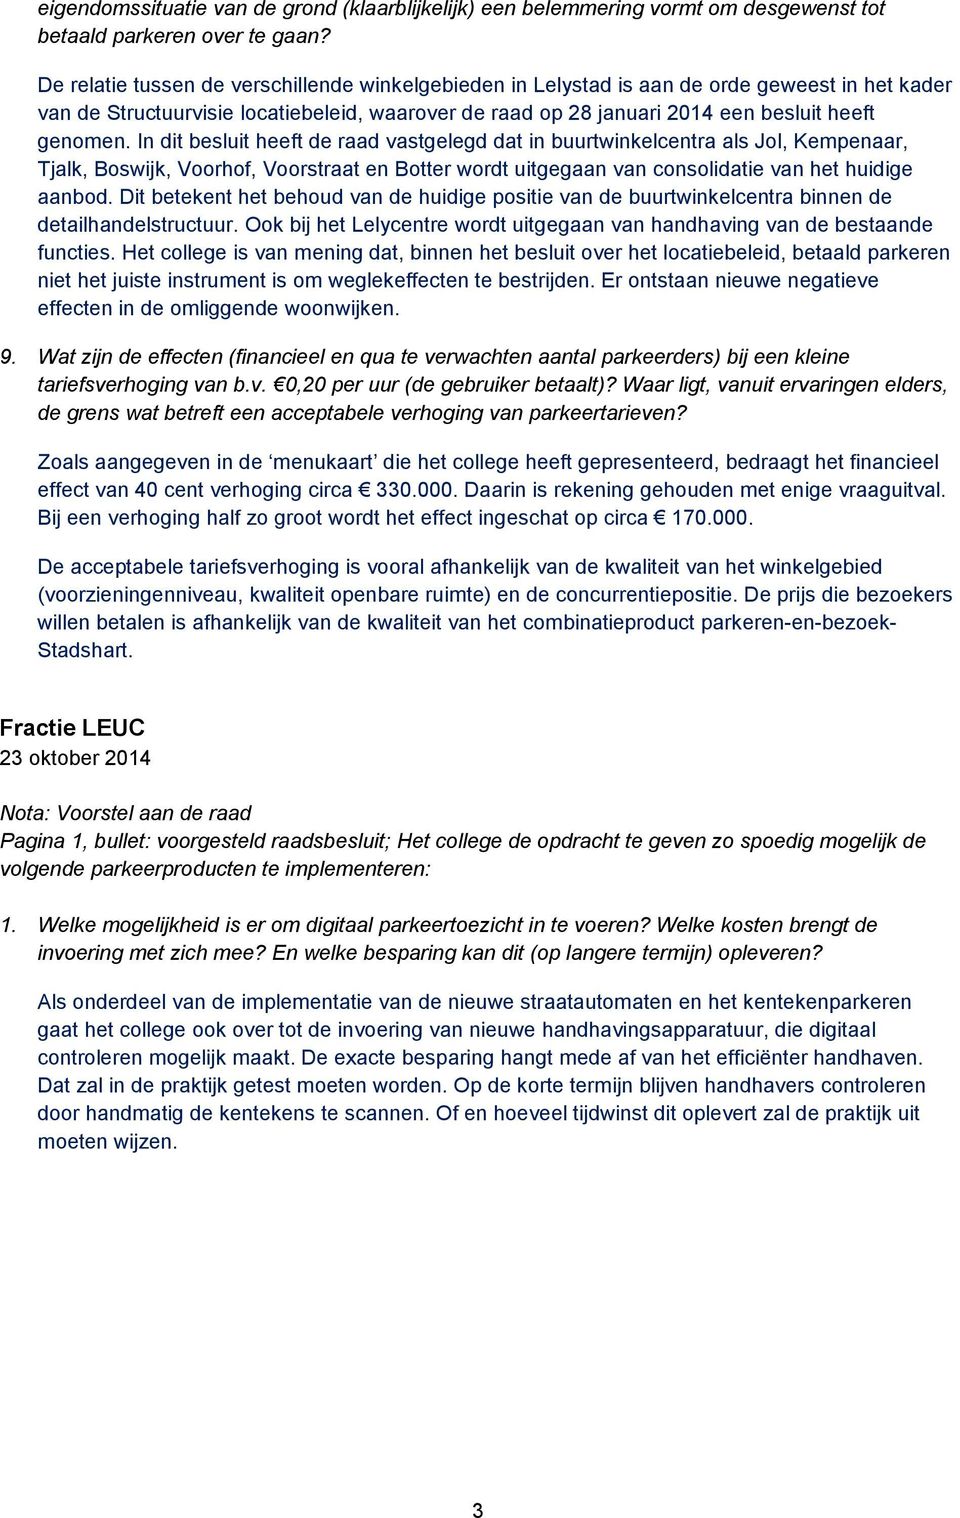 In dit besluit heeft de raad vastgelegd dat in buurtwinkelcentra als Jol, Kempenaar, Tjalk, Boswijk, Voorhof, Voorstraat en Botter wordt uitgegaan van consolidatie van het huidige aanbod.